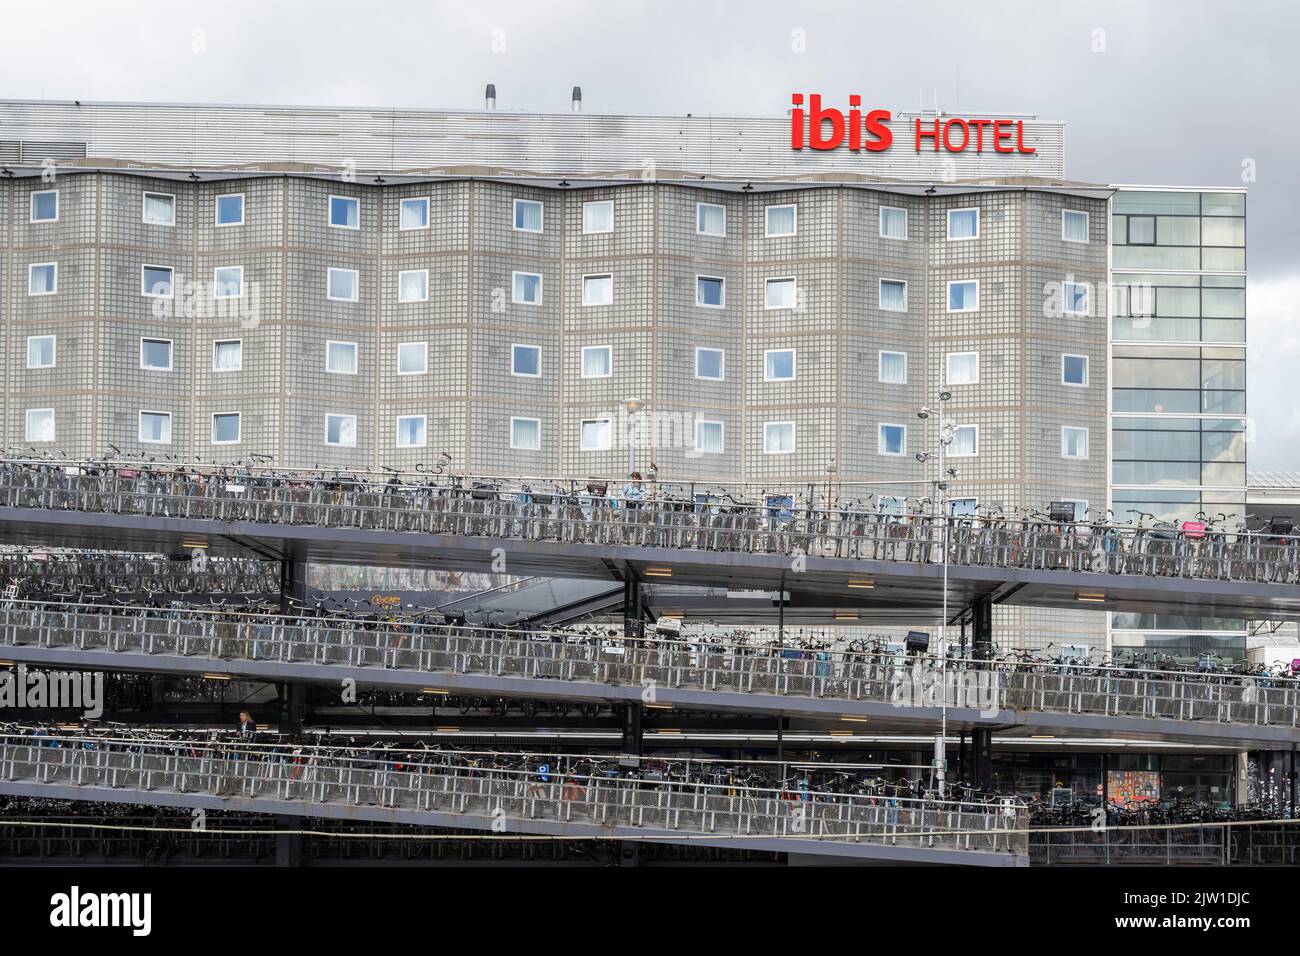 Una vista generale di un hotel Ibis ad Amsterdam, Olanda. Foto Stock